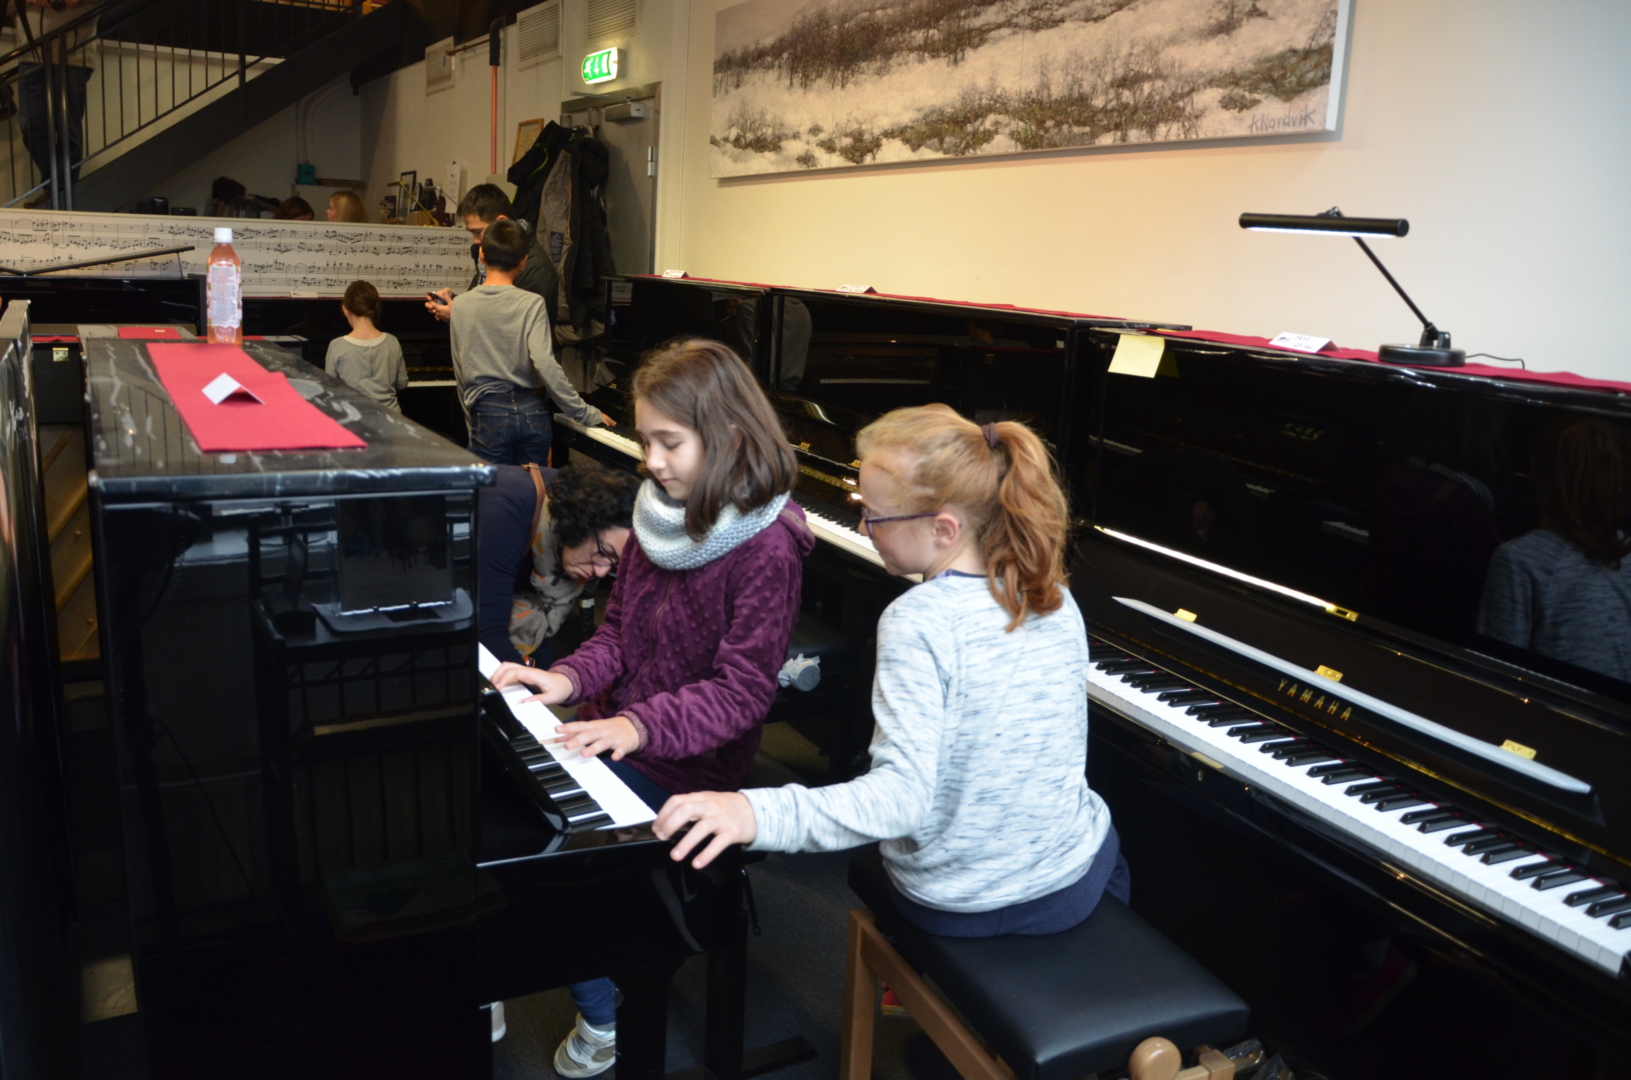 Hjelp og støtte: Elevene inspirerer hverandre med spillet sitt og med framgangen, og vokser og motiveres av fellesskapet, mener pianolæreren. 